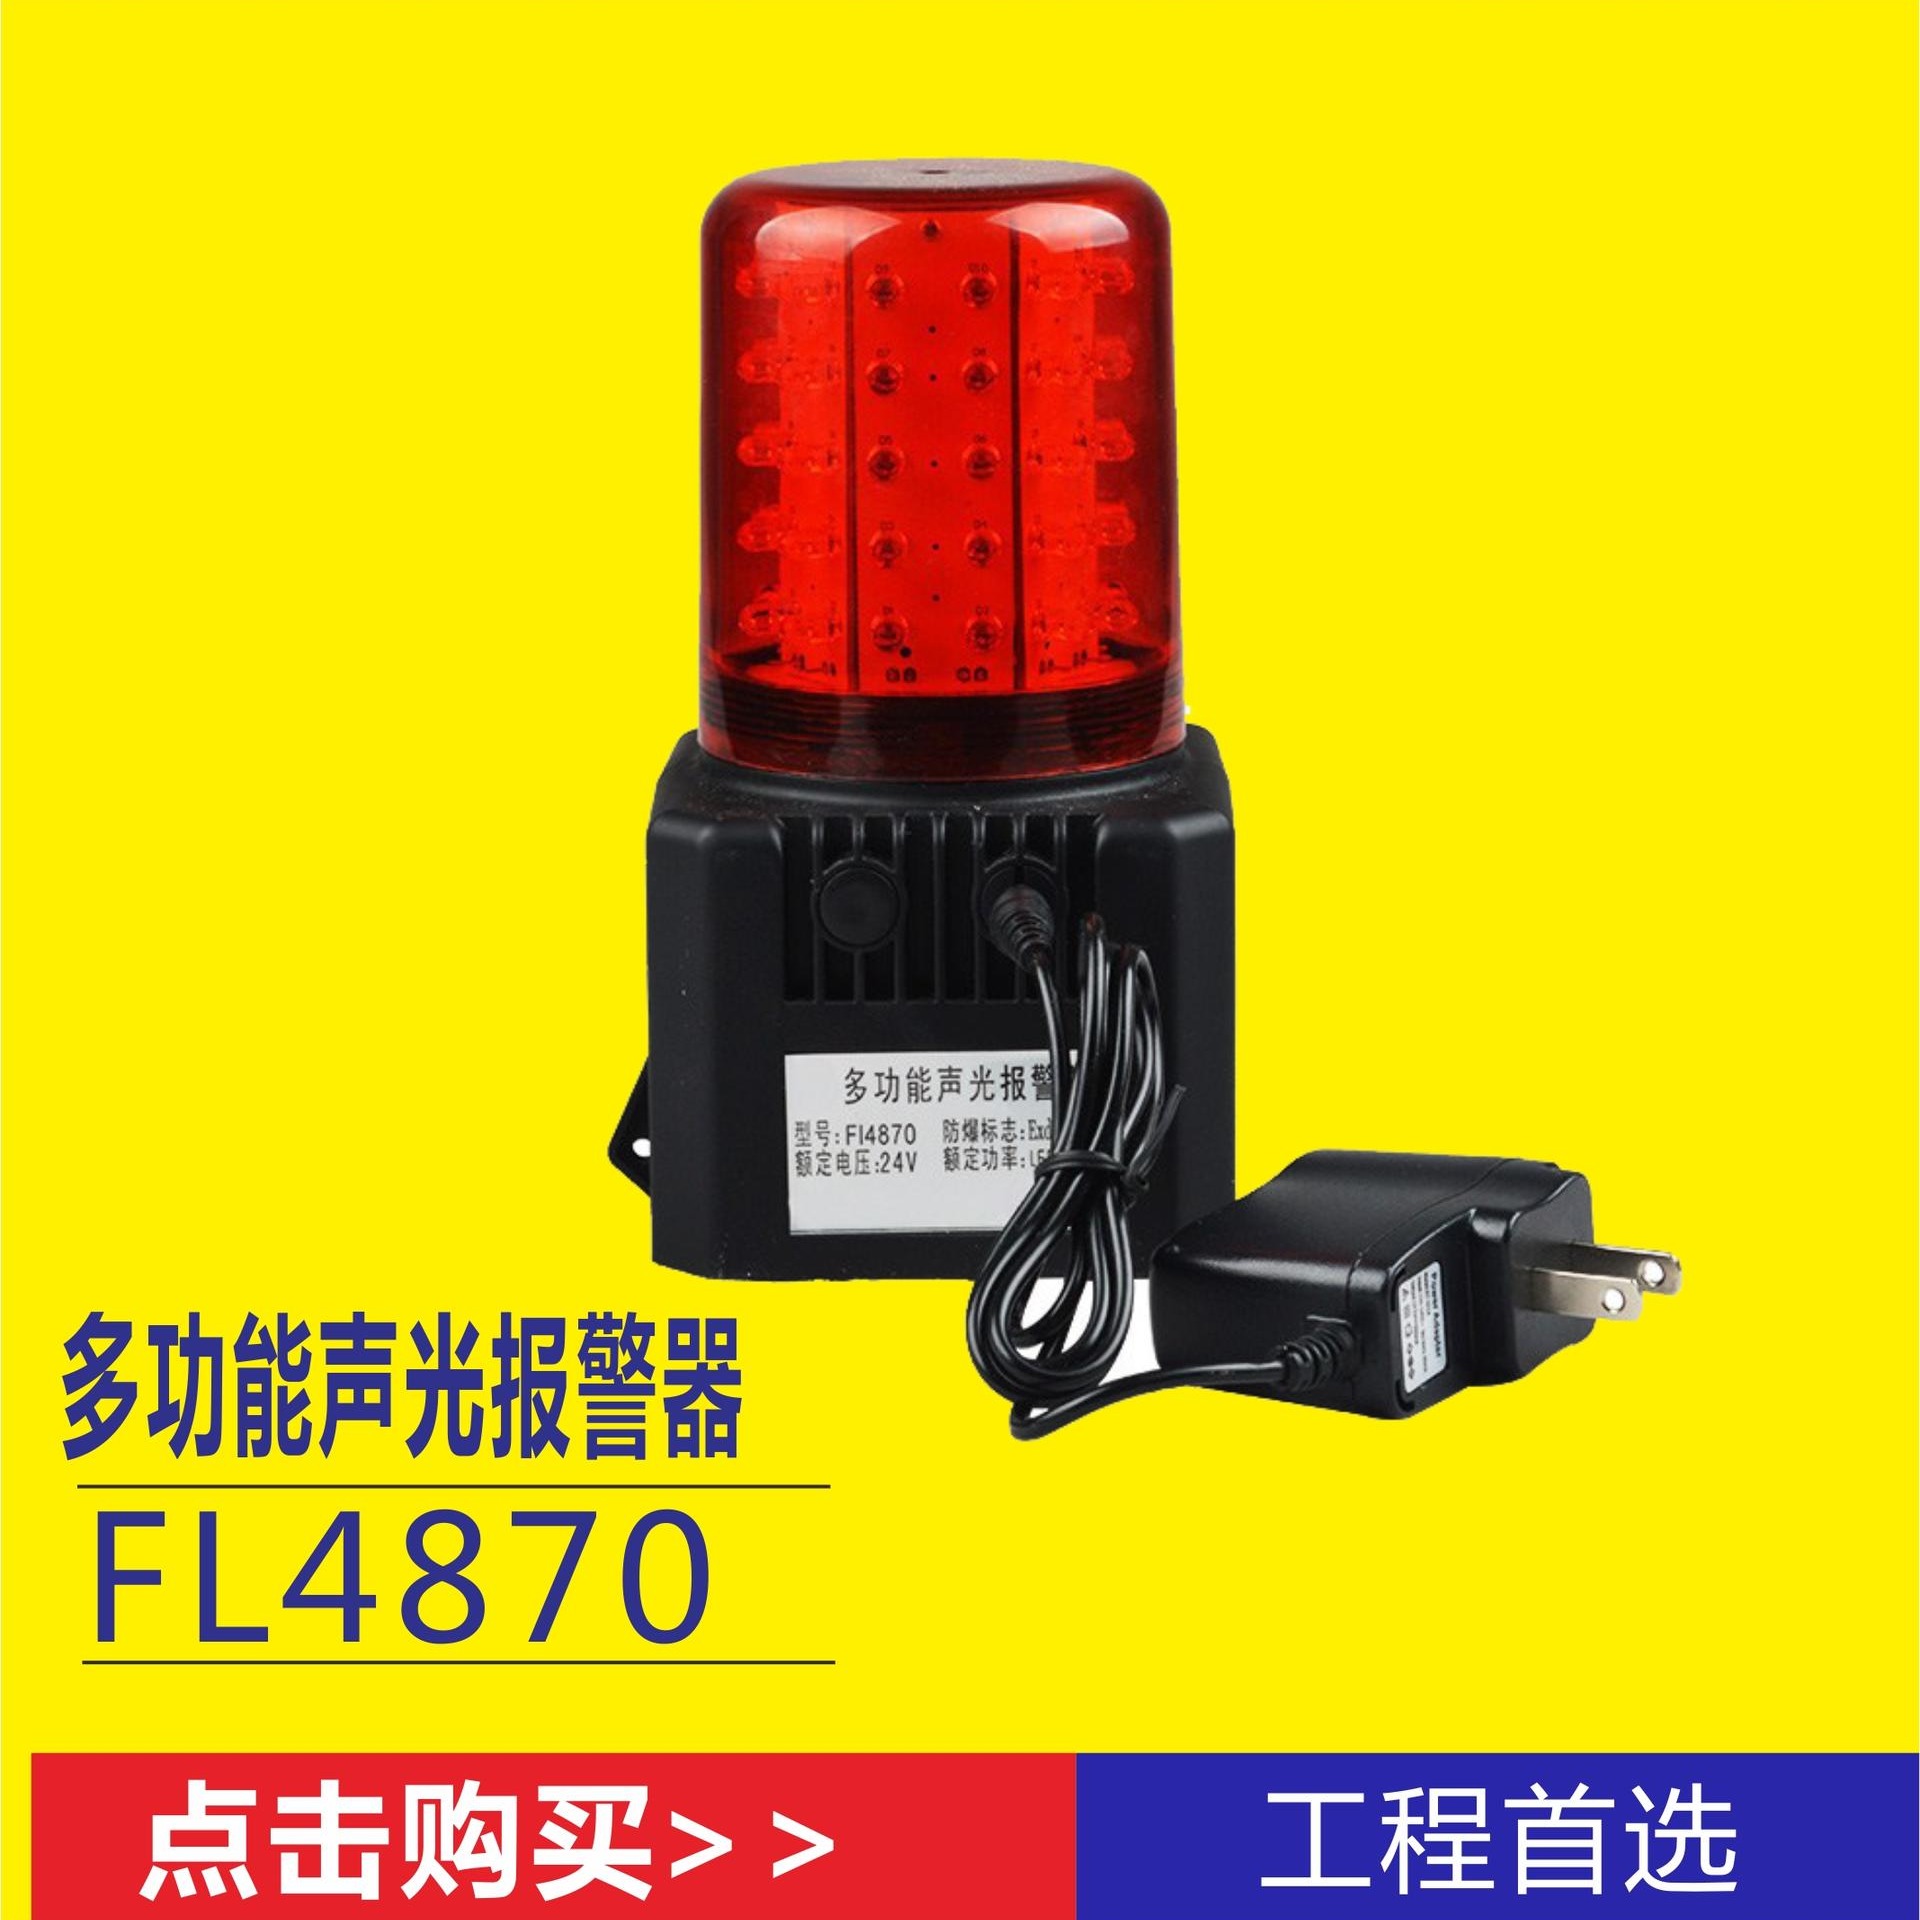 铁路车辆调度报警器 FL4870多功能声光警示灯 铁路施工抢险工作照明灯 多功能声光警示灯